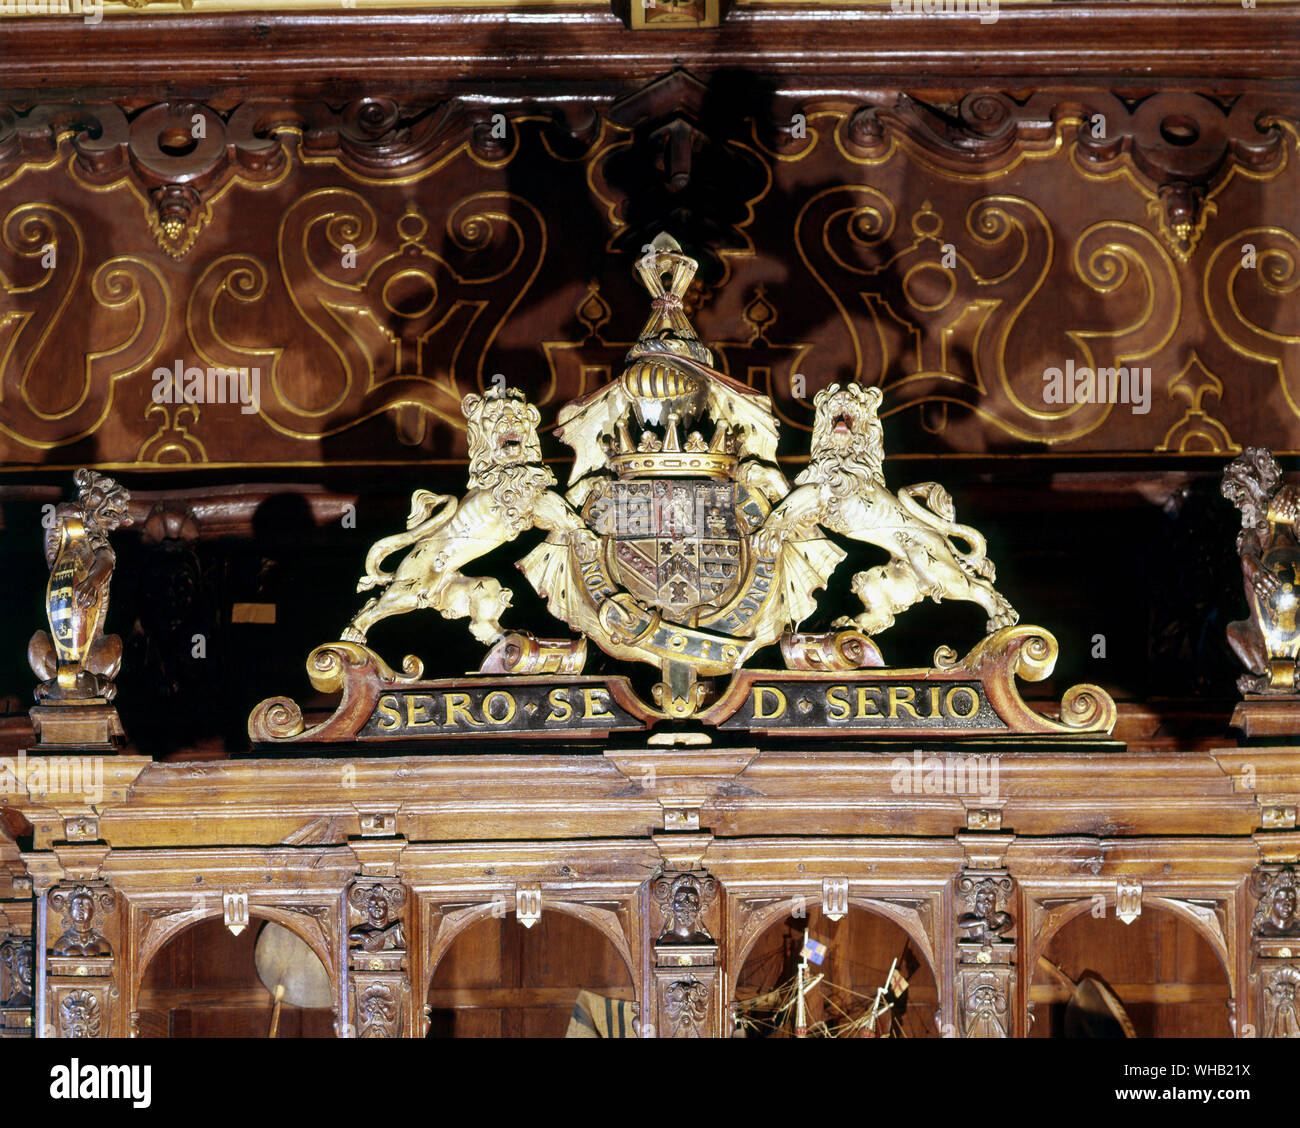 Le Cecil armoiries - salle de marbre (Grande Salle) Hatfield House - Sero sed serio (fin mais pour de bon). Banque D'Images